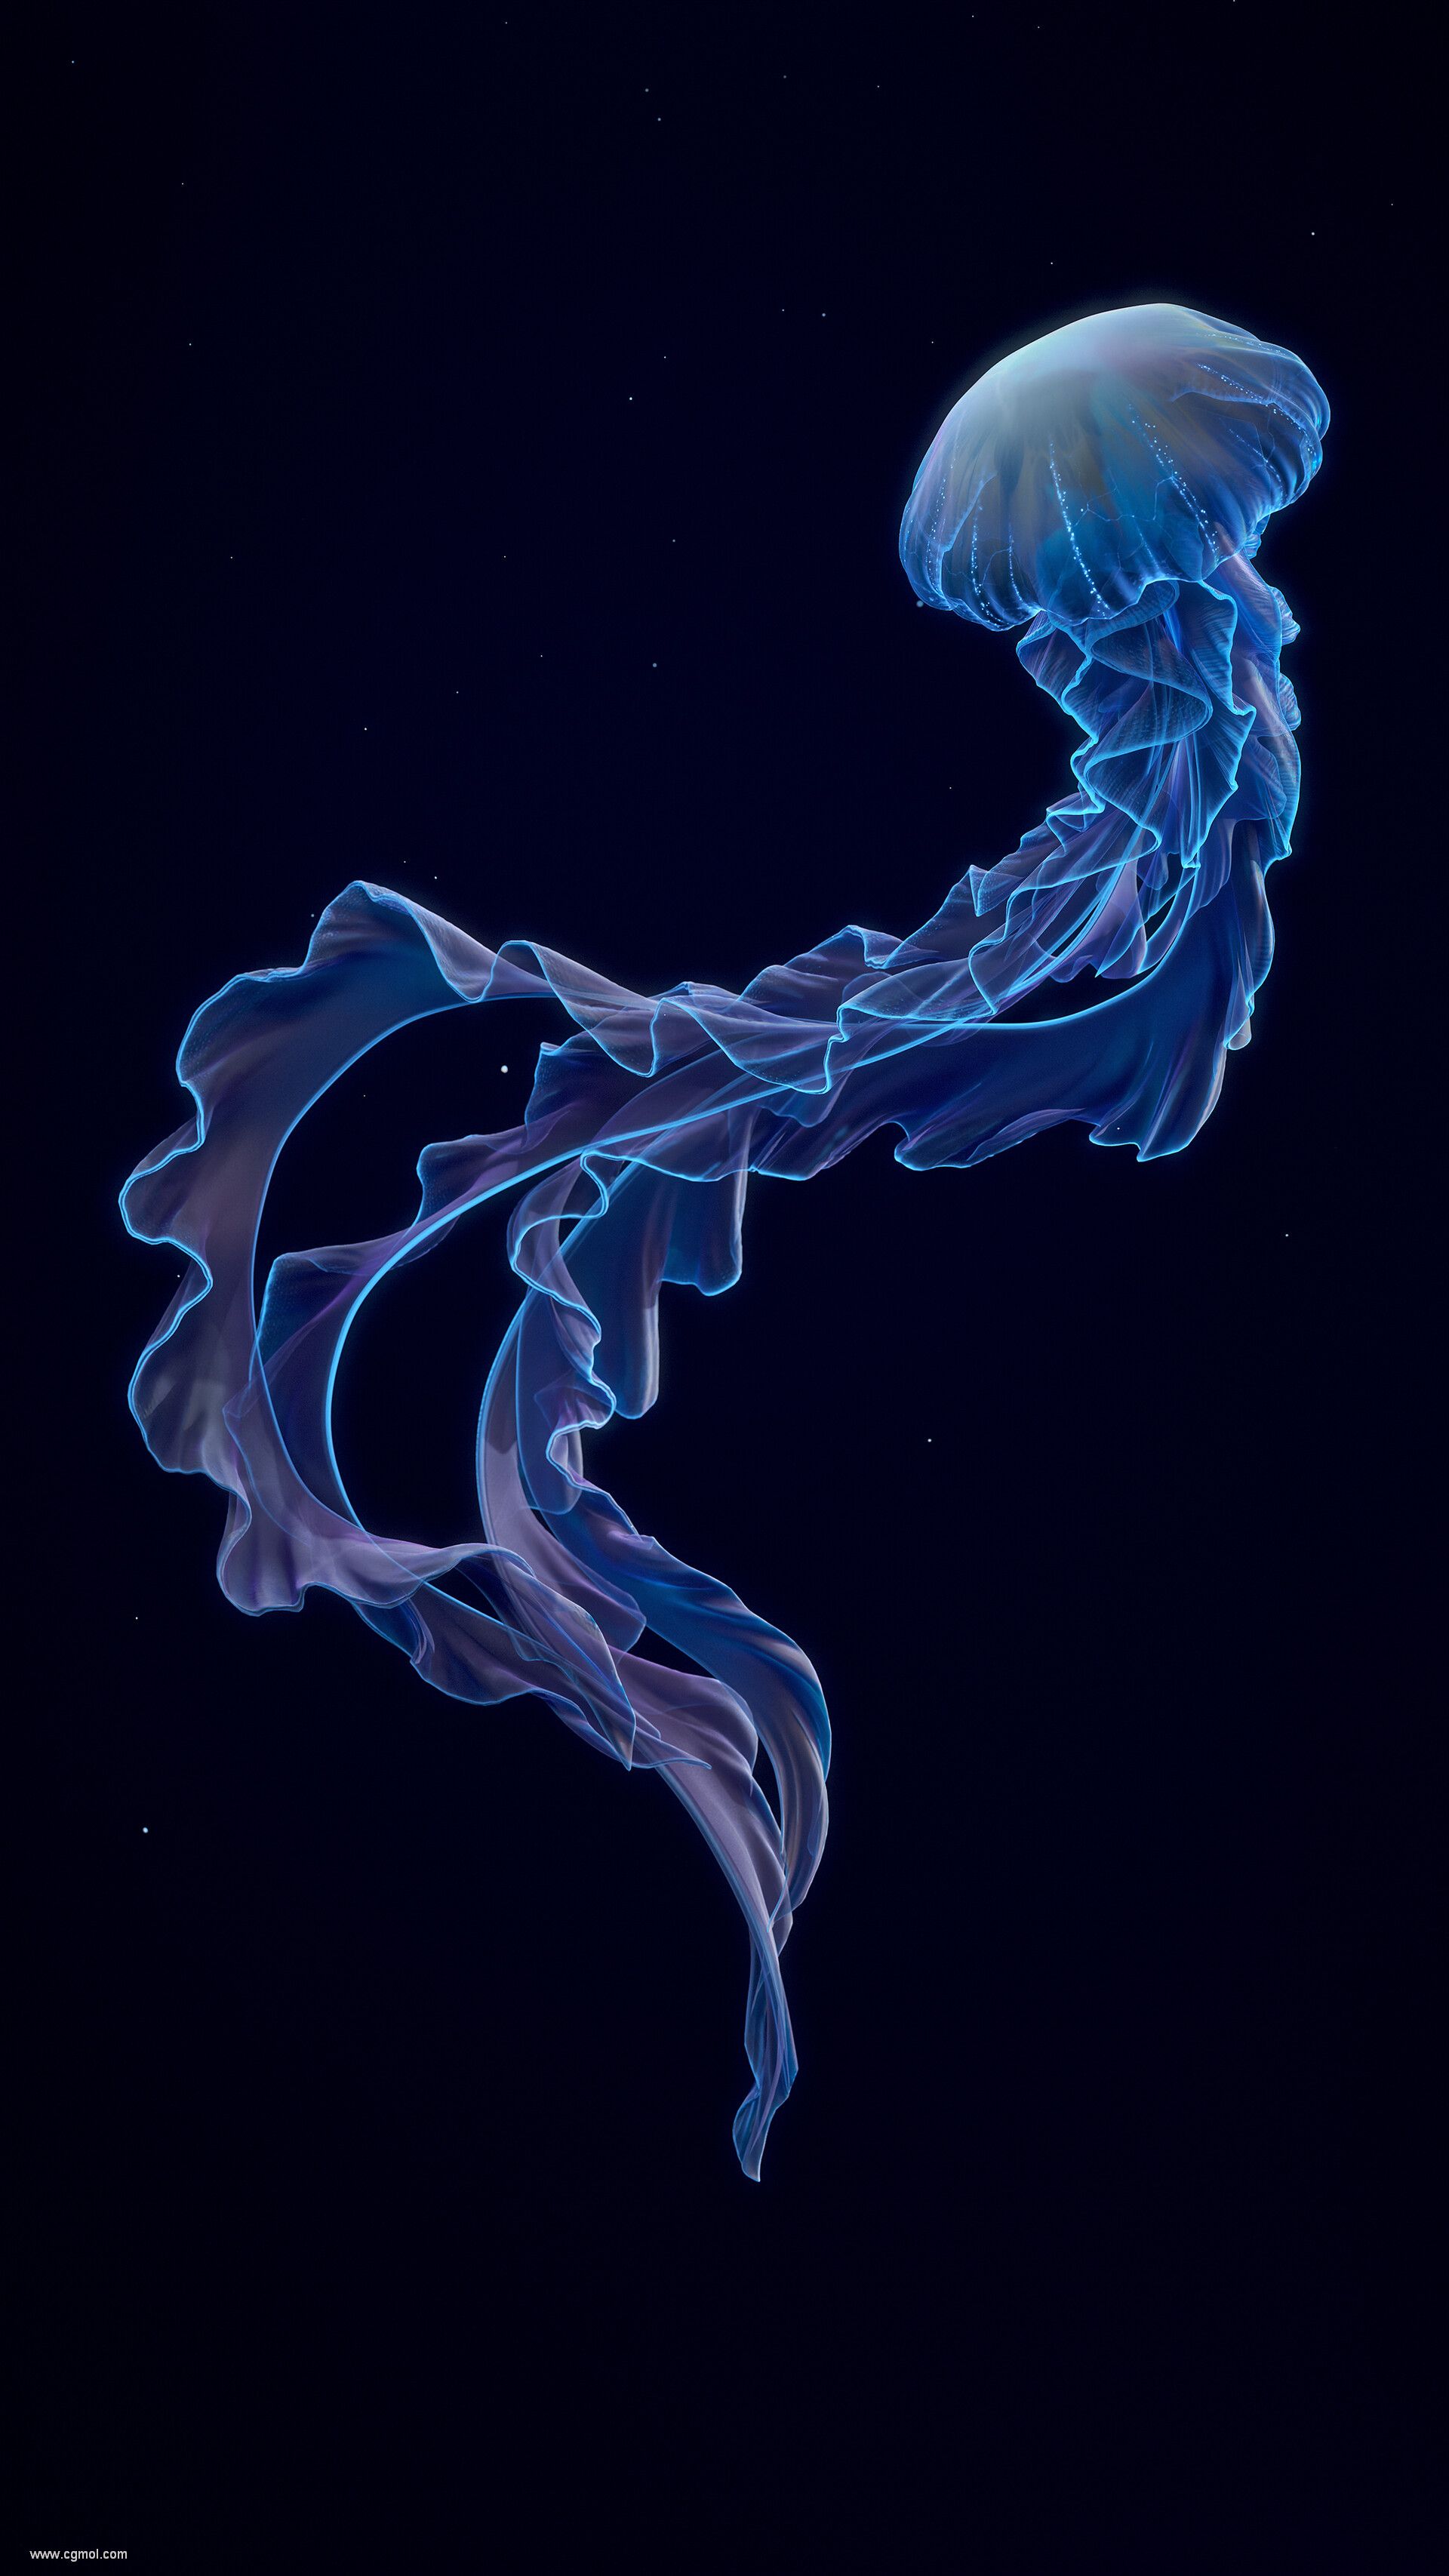 shun-jellyfish05